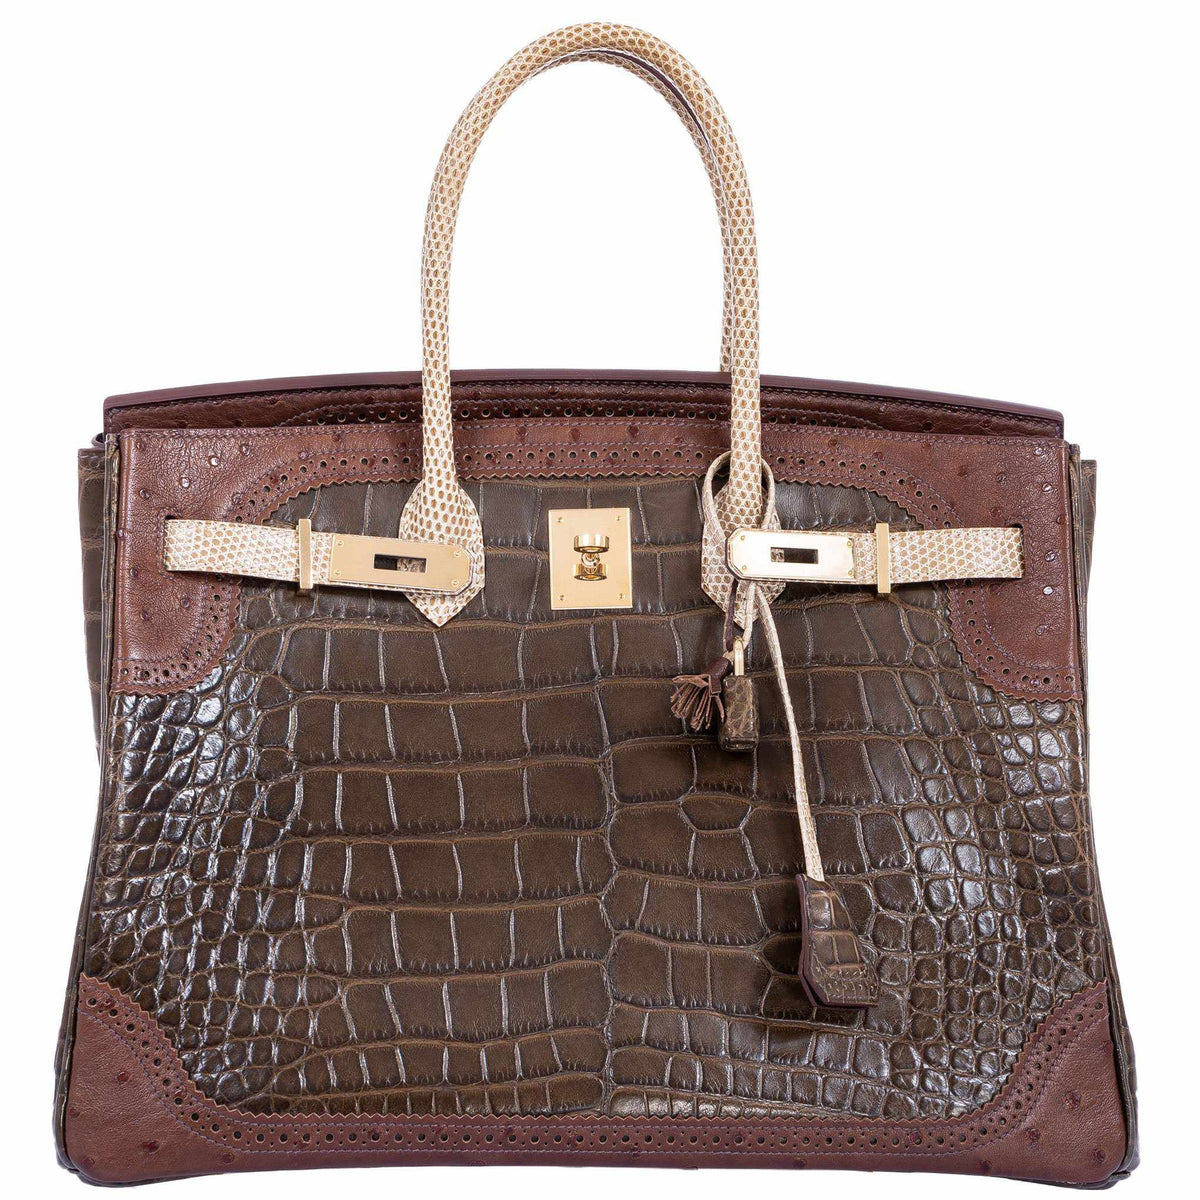 Hermès Birkin Ghillies 35 Tri-Color Bag - Alligator, Ostrich & Lizard